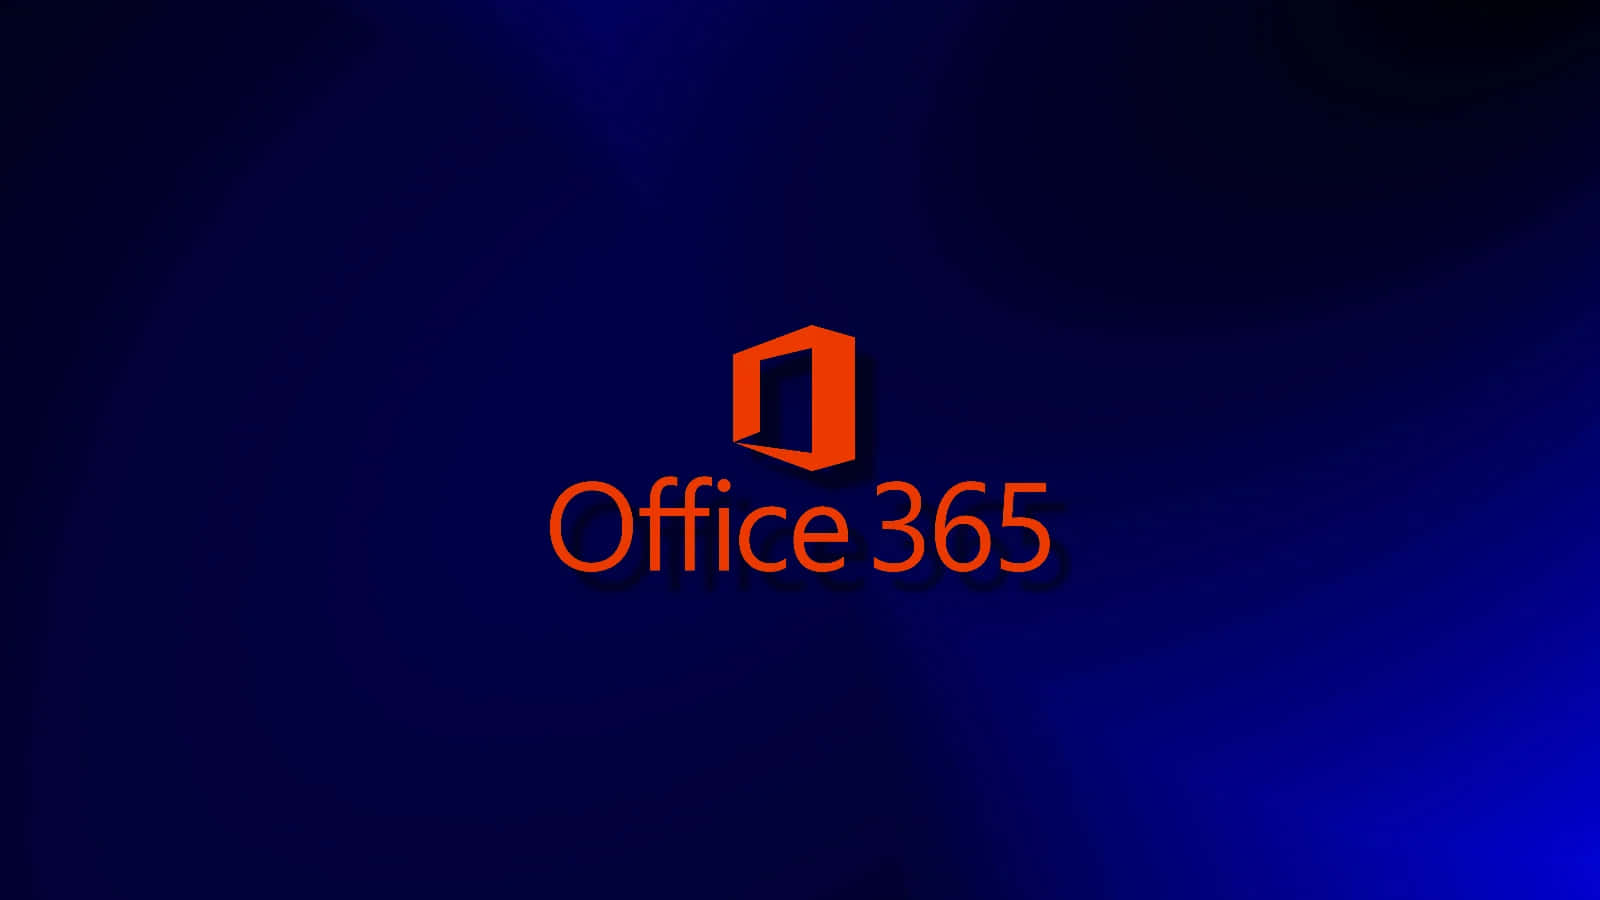 Büro365 Logo Auf Blauem Hintergrund.